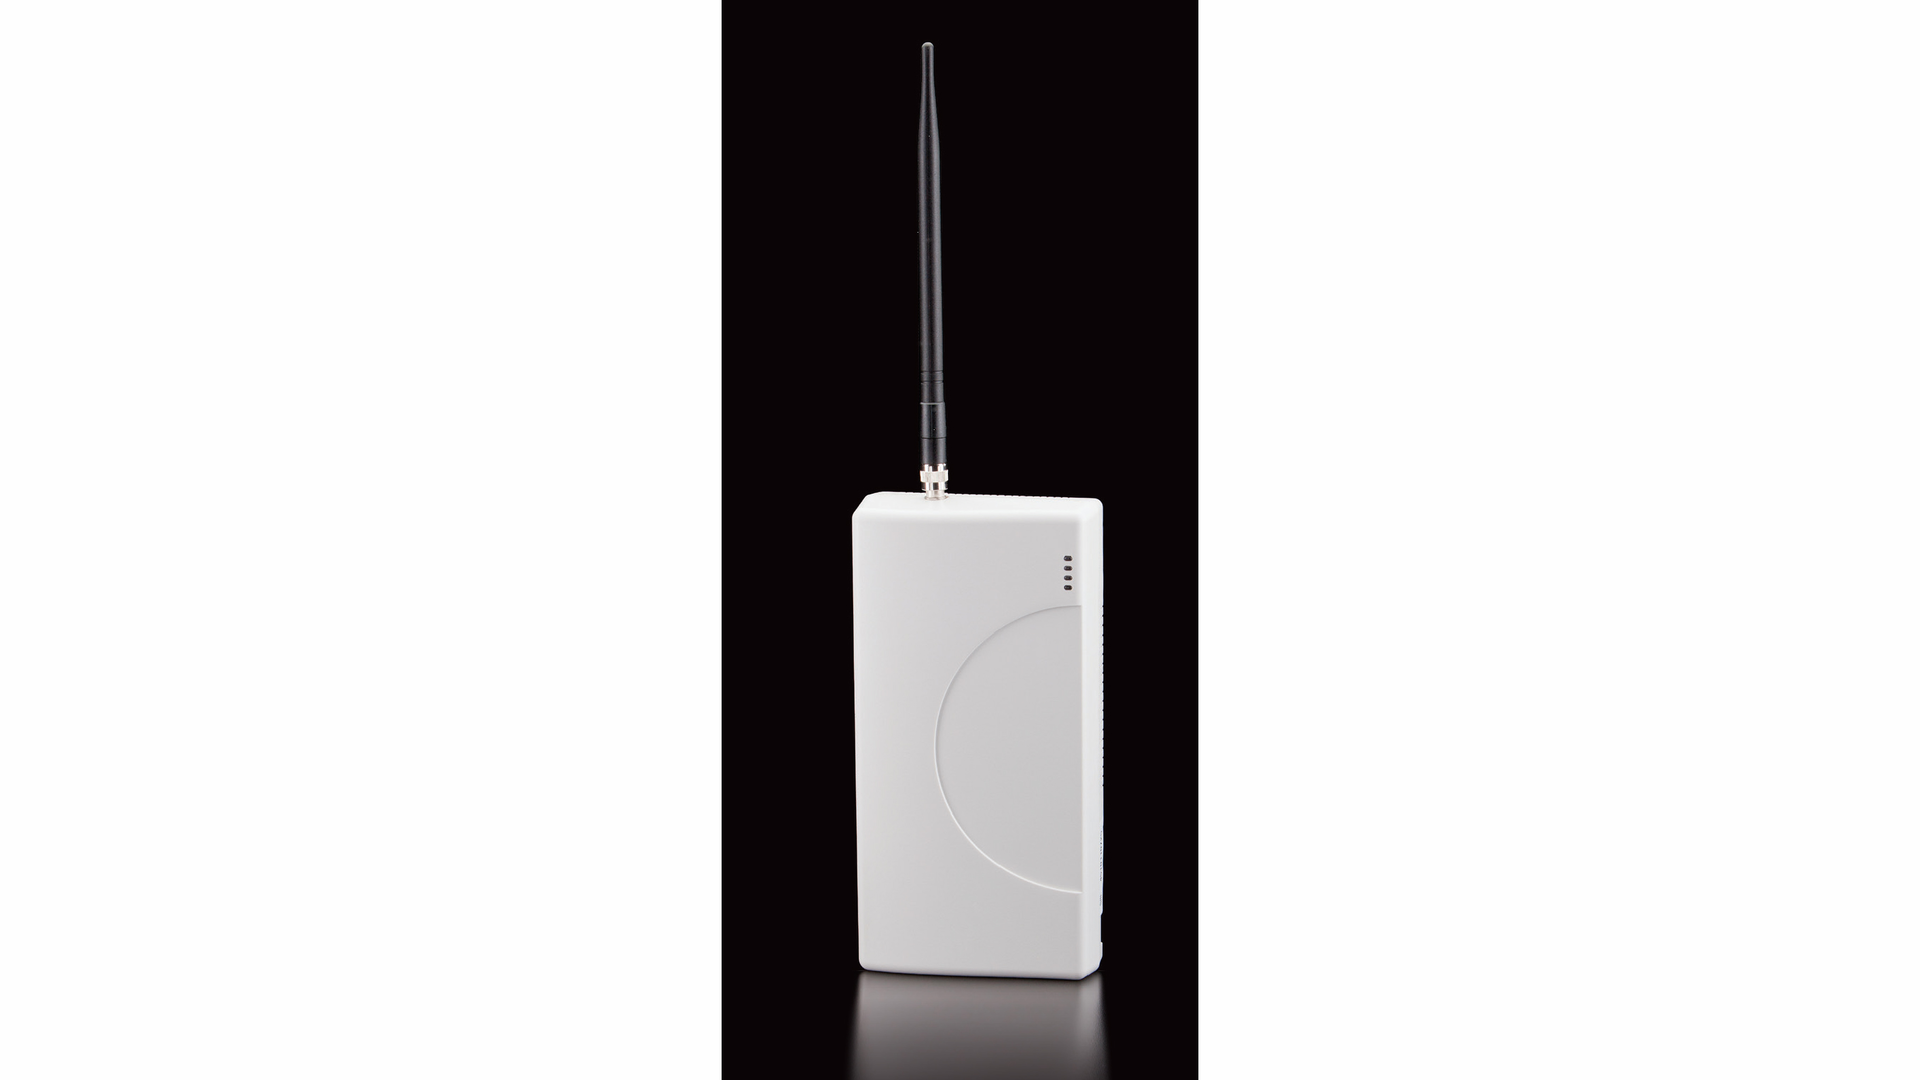 Telguard TGKITV04 Commercial Fire Cellular CDMA Alarm Converter Kit for Verizon